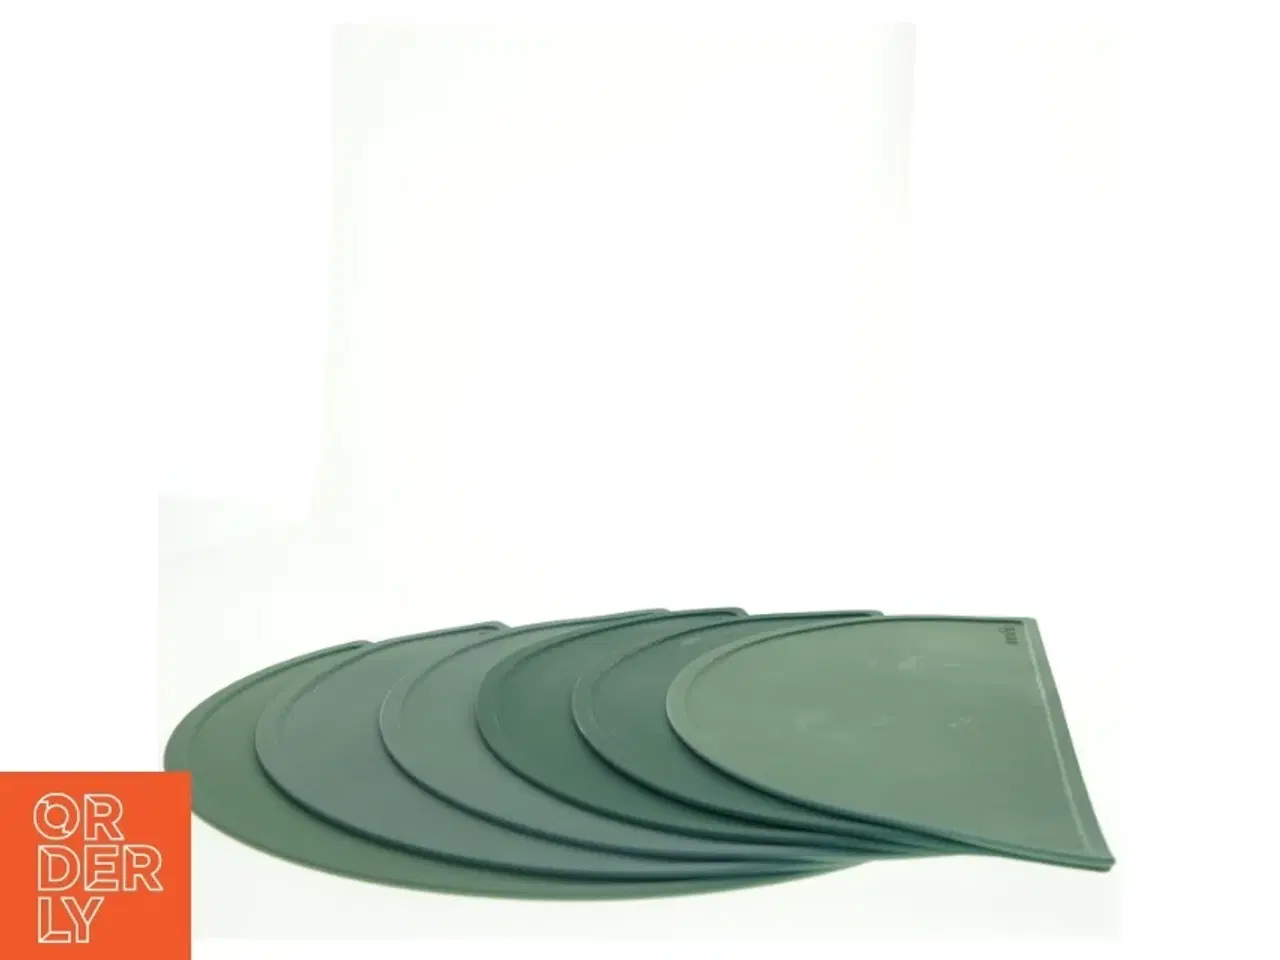 Billede 3 - Mushie silikone pladsæt fra Mushie (str. 46 x 23 cm)